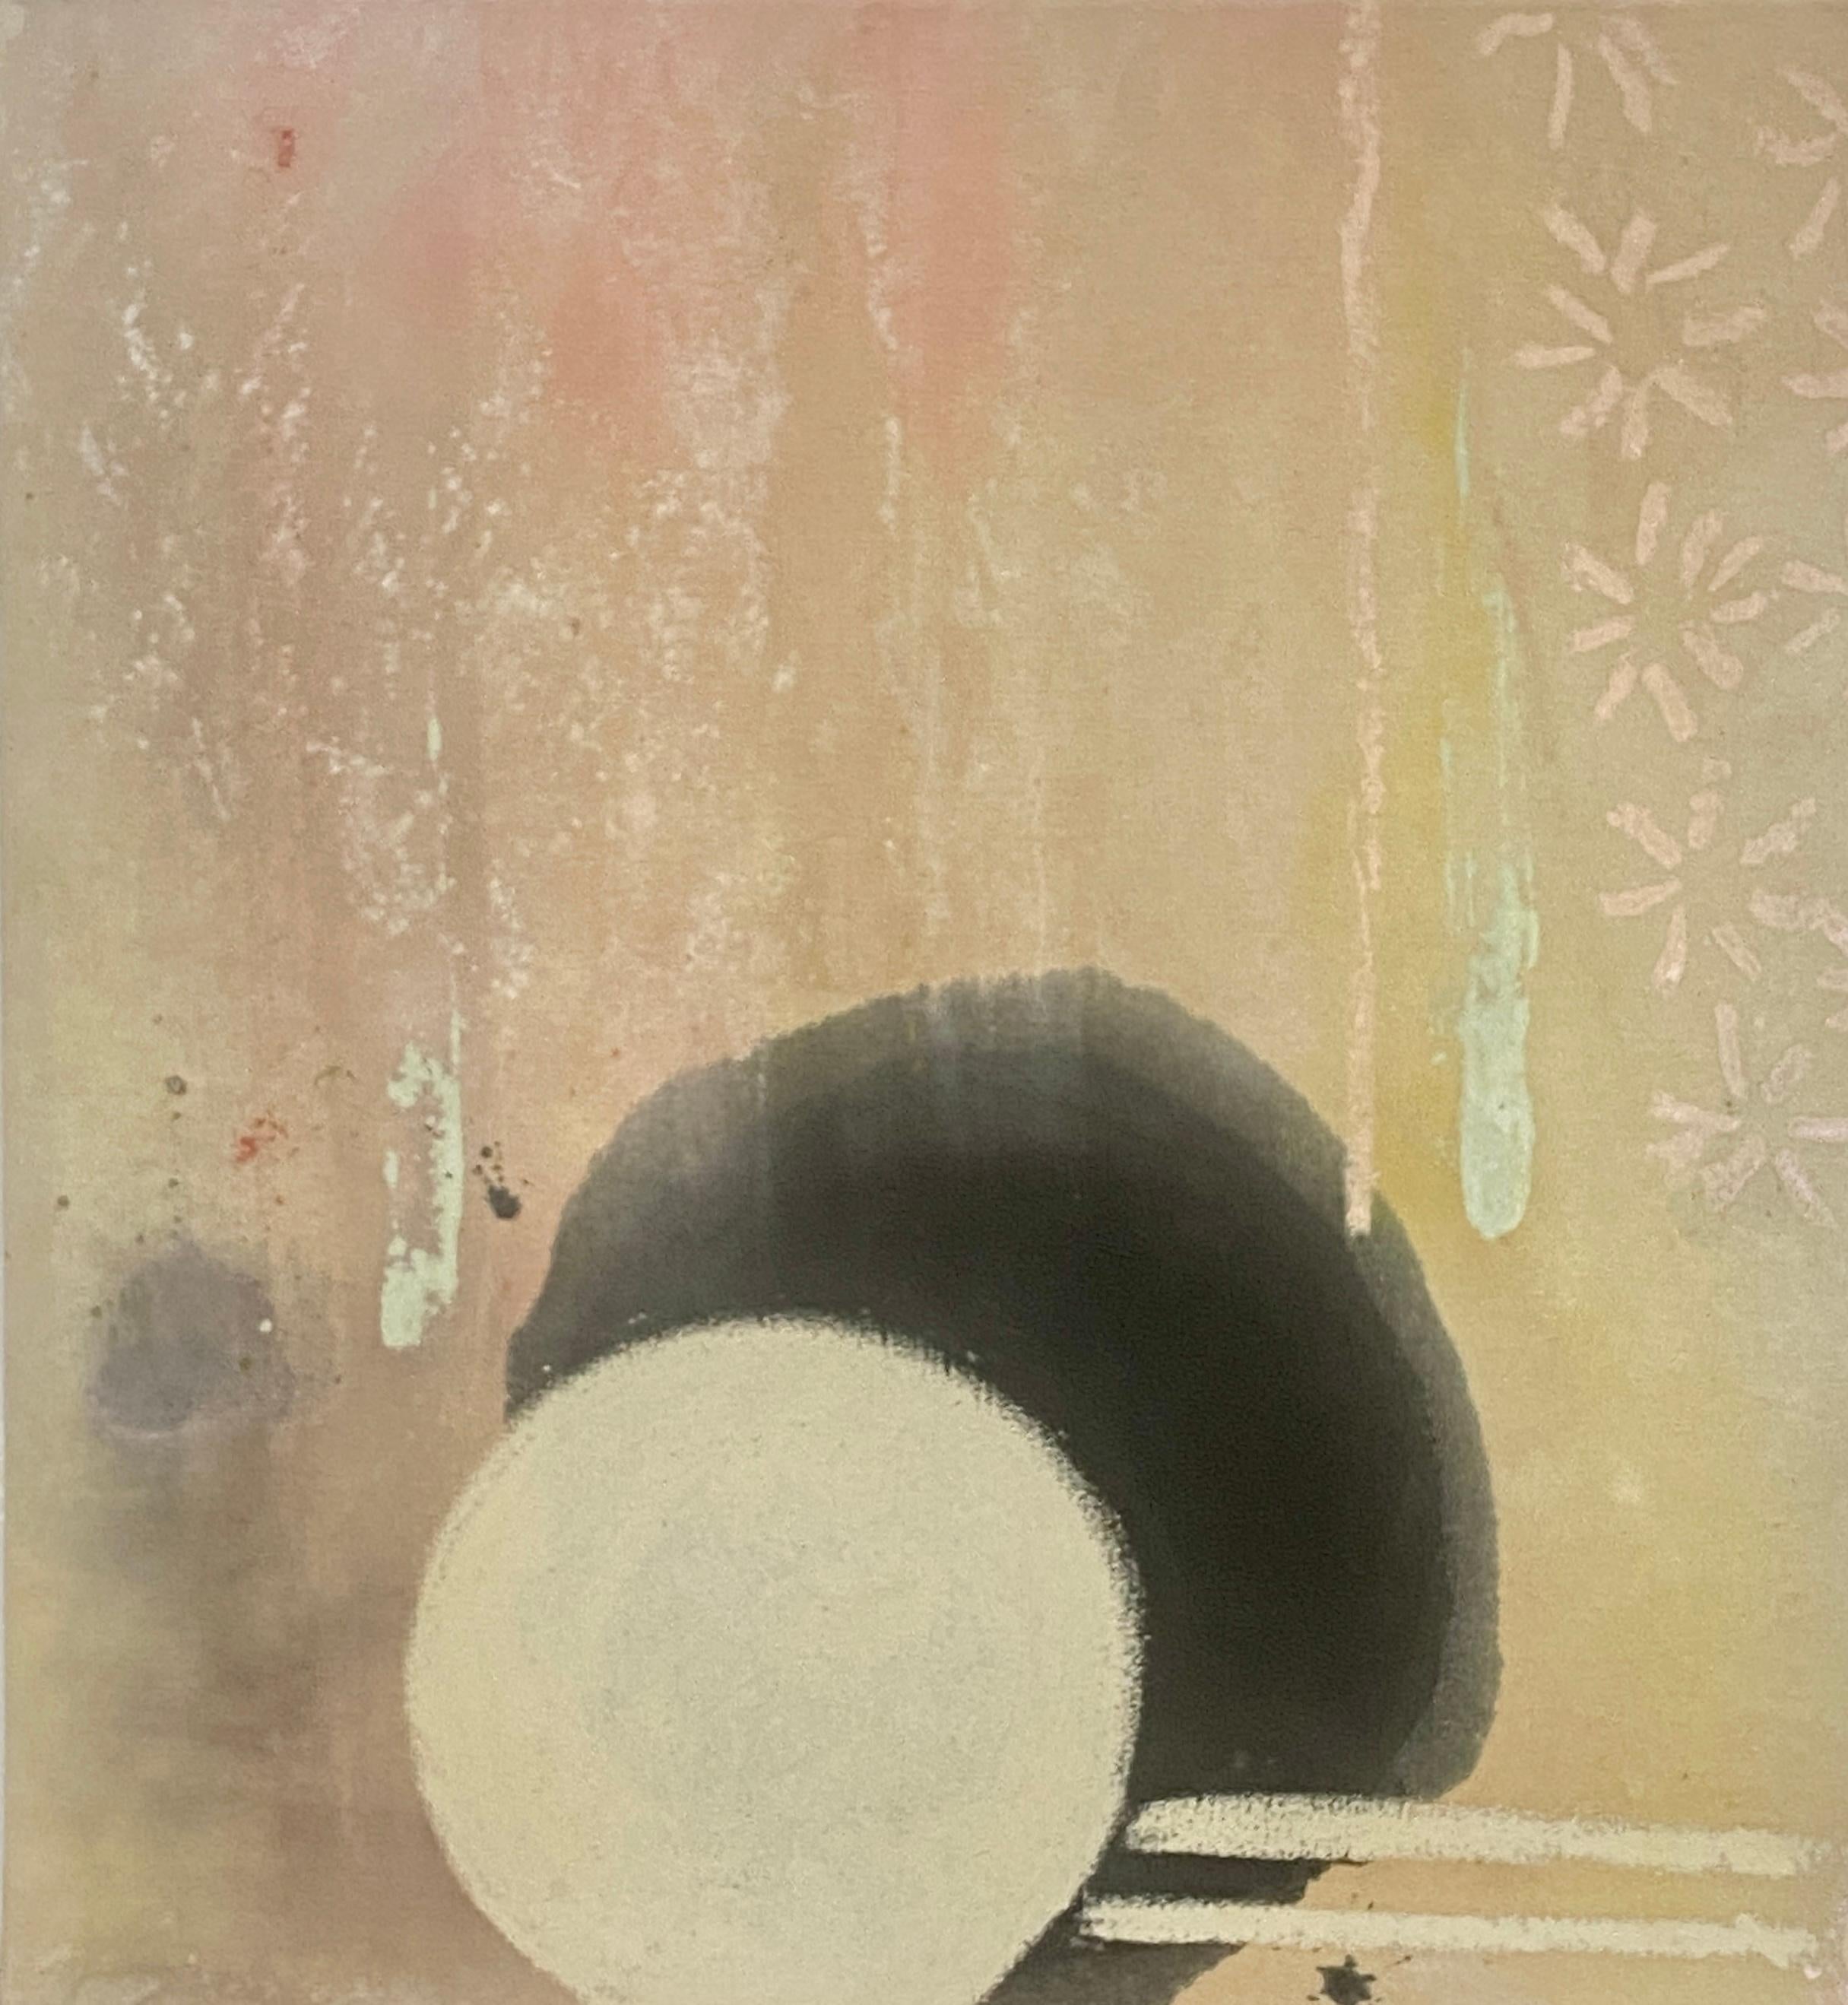 Abstract Painting Elisa Niva - La lune des solstices d'été - Peinture abstraite à teinture champêtre